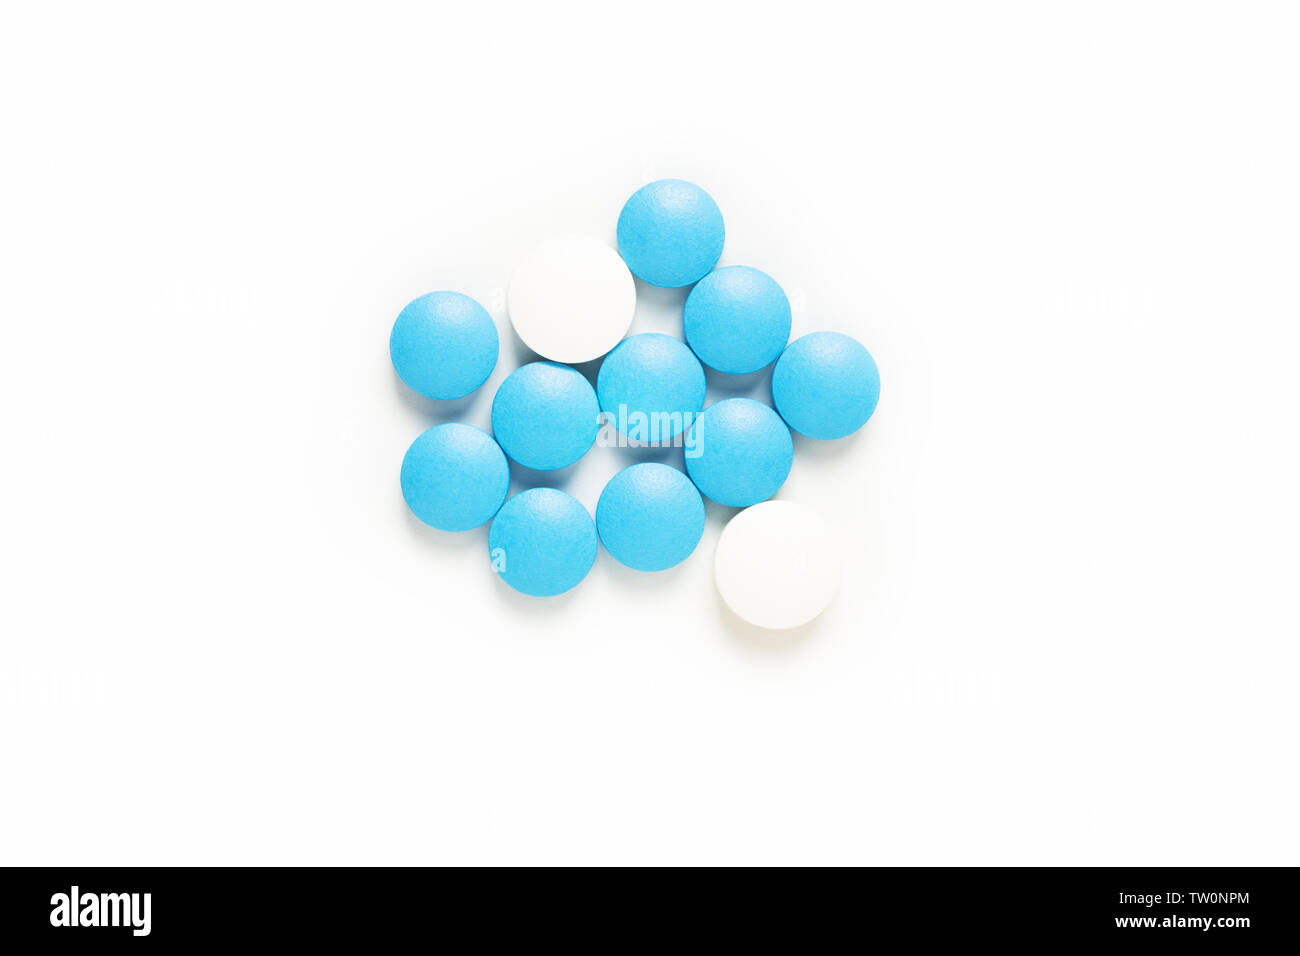 Gesundheit und Medikamente Konzept blaue und weiße Pillen, Drogen oder Tabletten auf weißem Hintergrund mit Kopie Raum Stockfoto